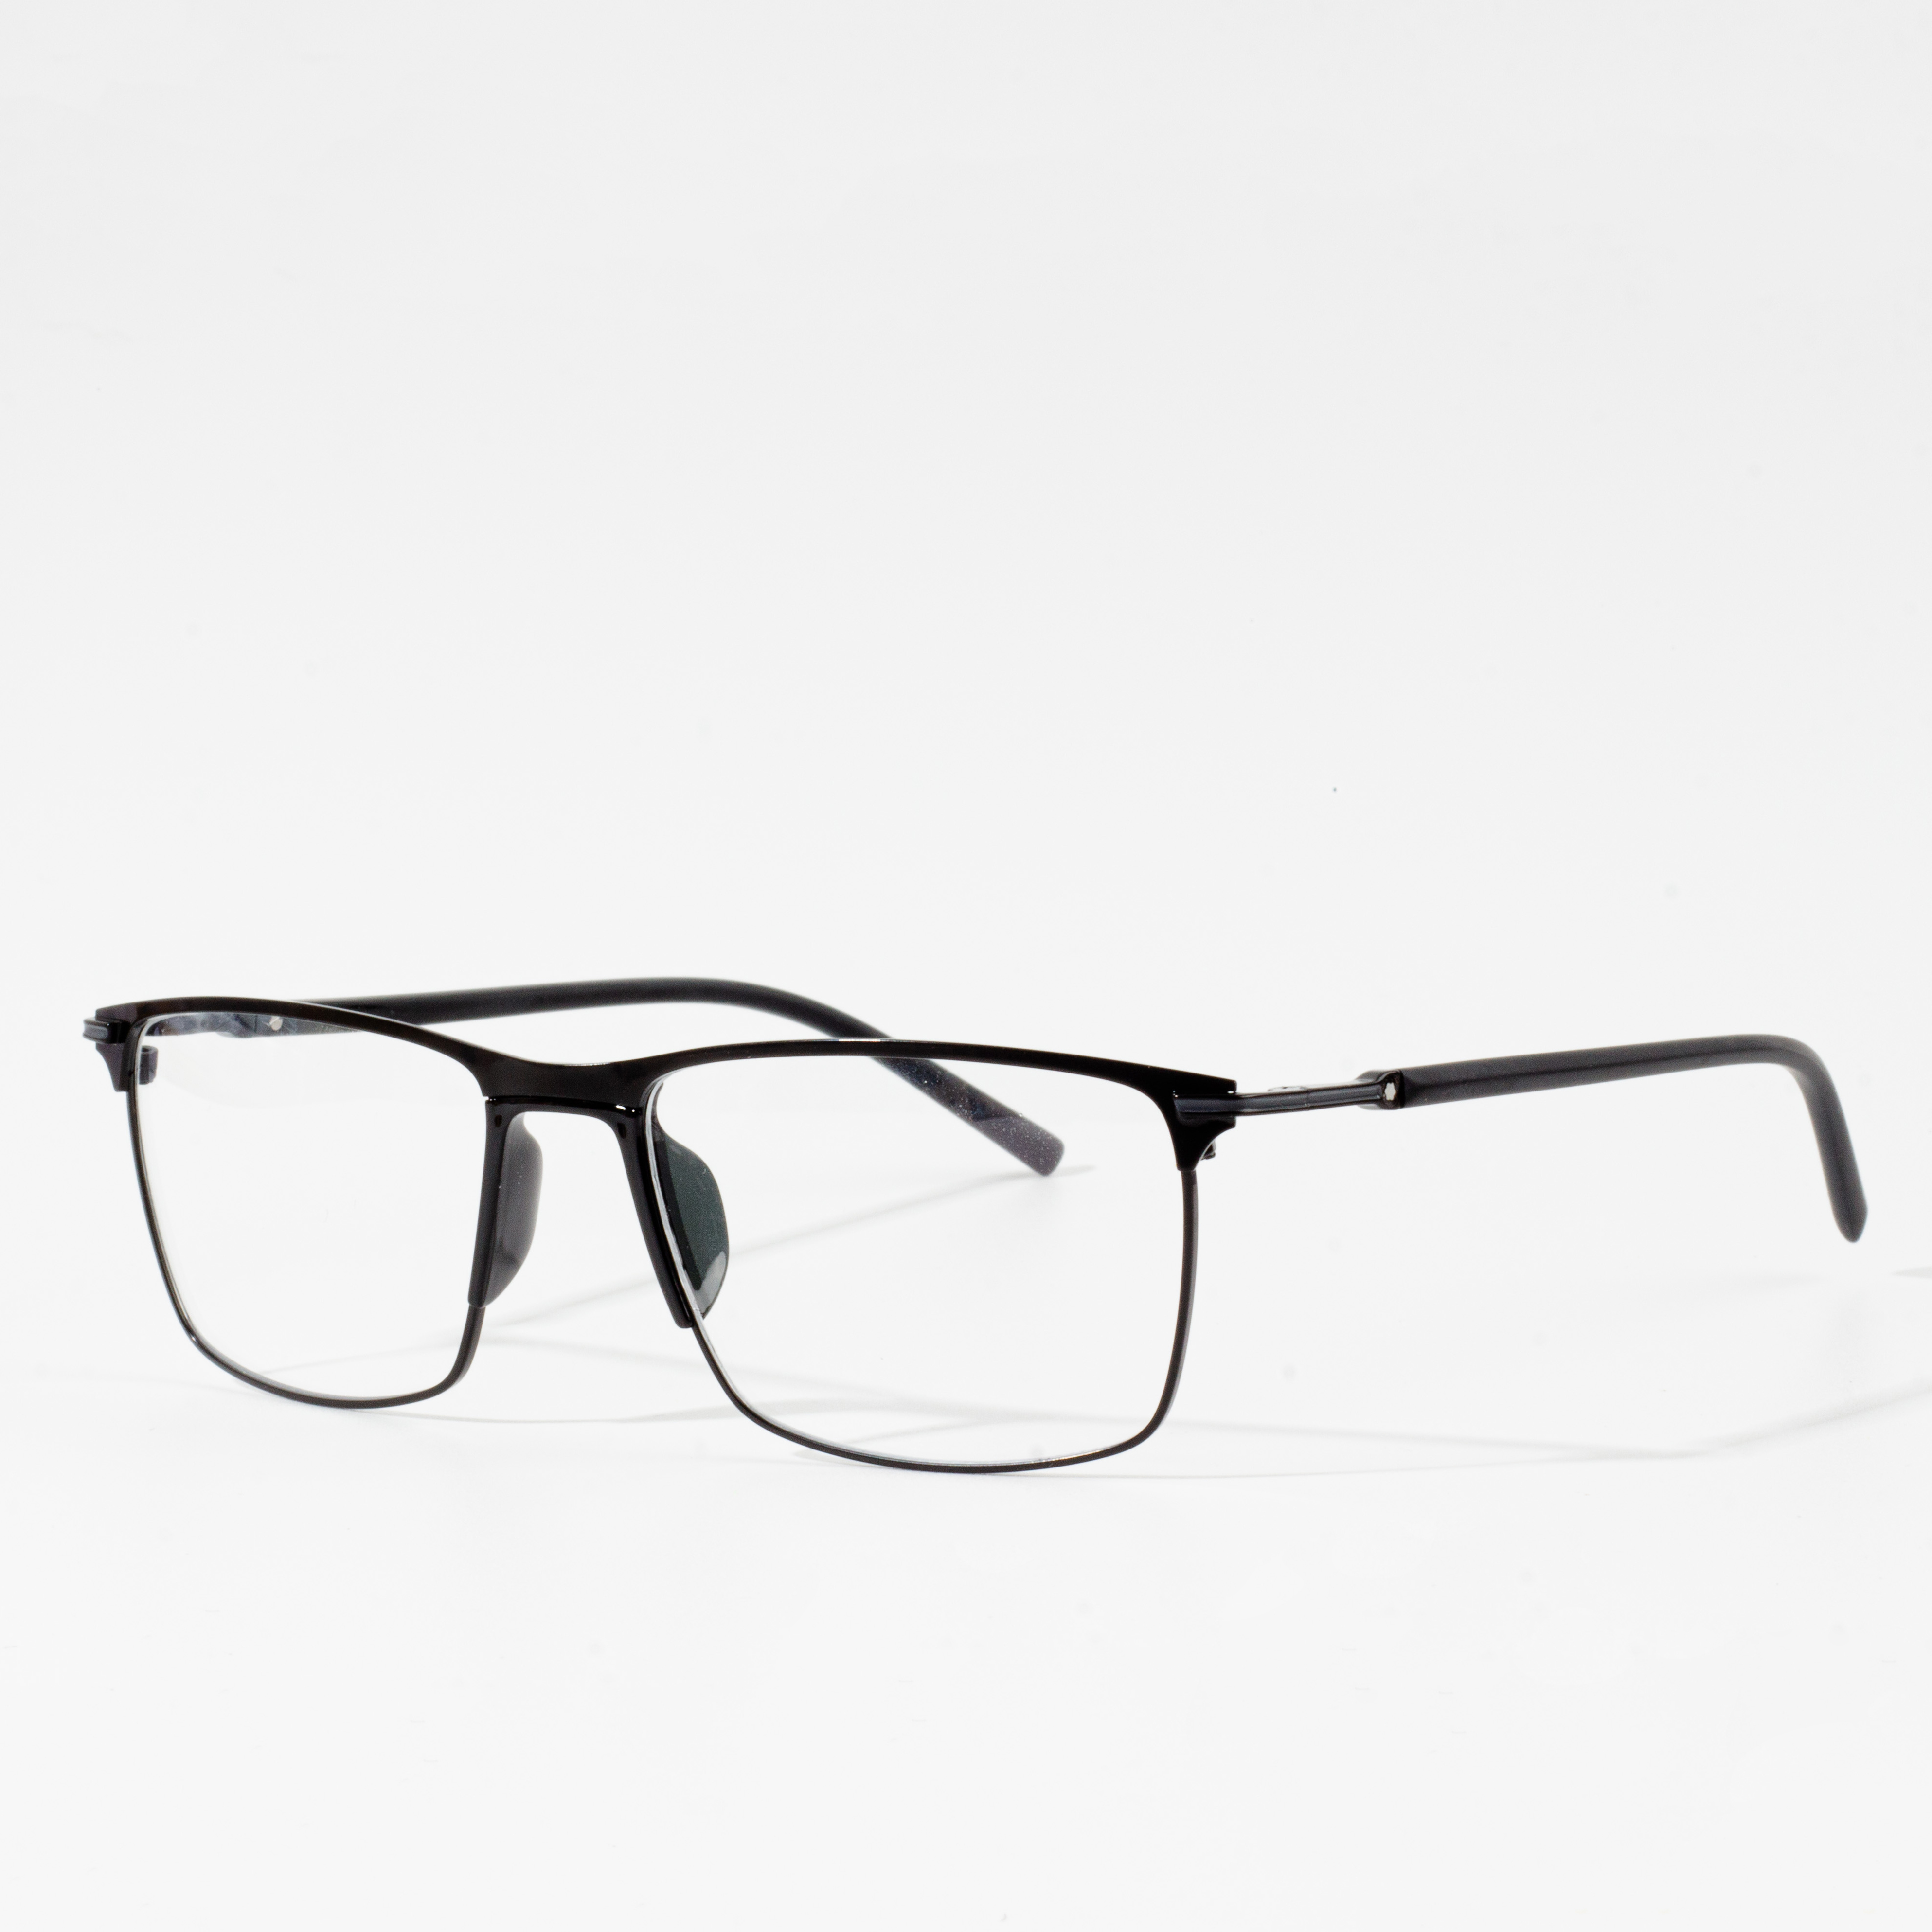 optiniai akinių rėmeliai vyrams